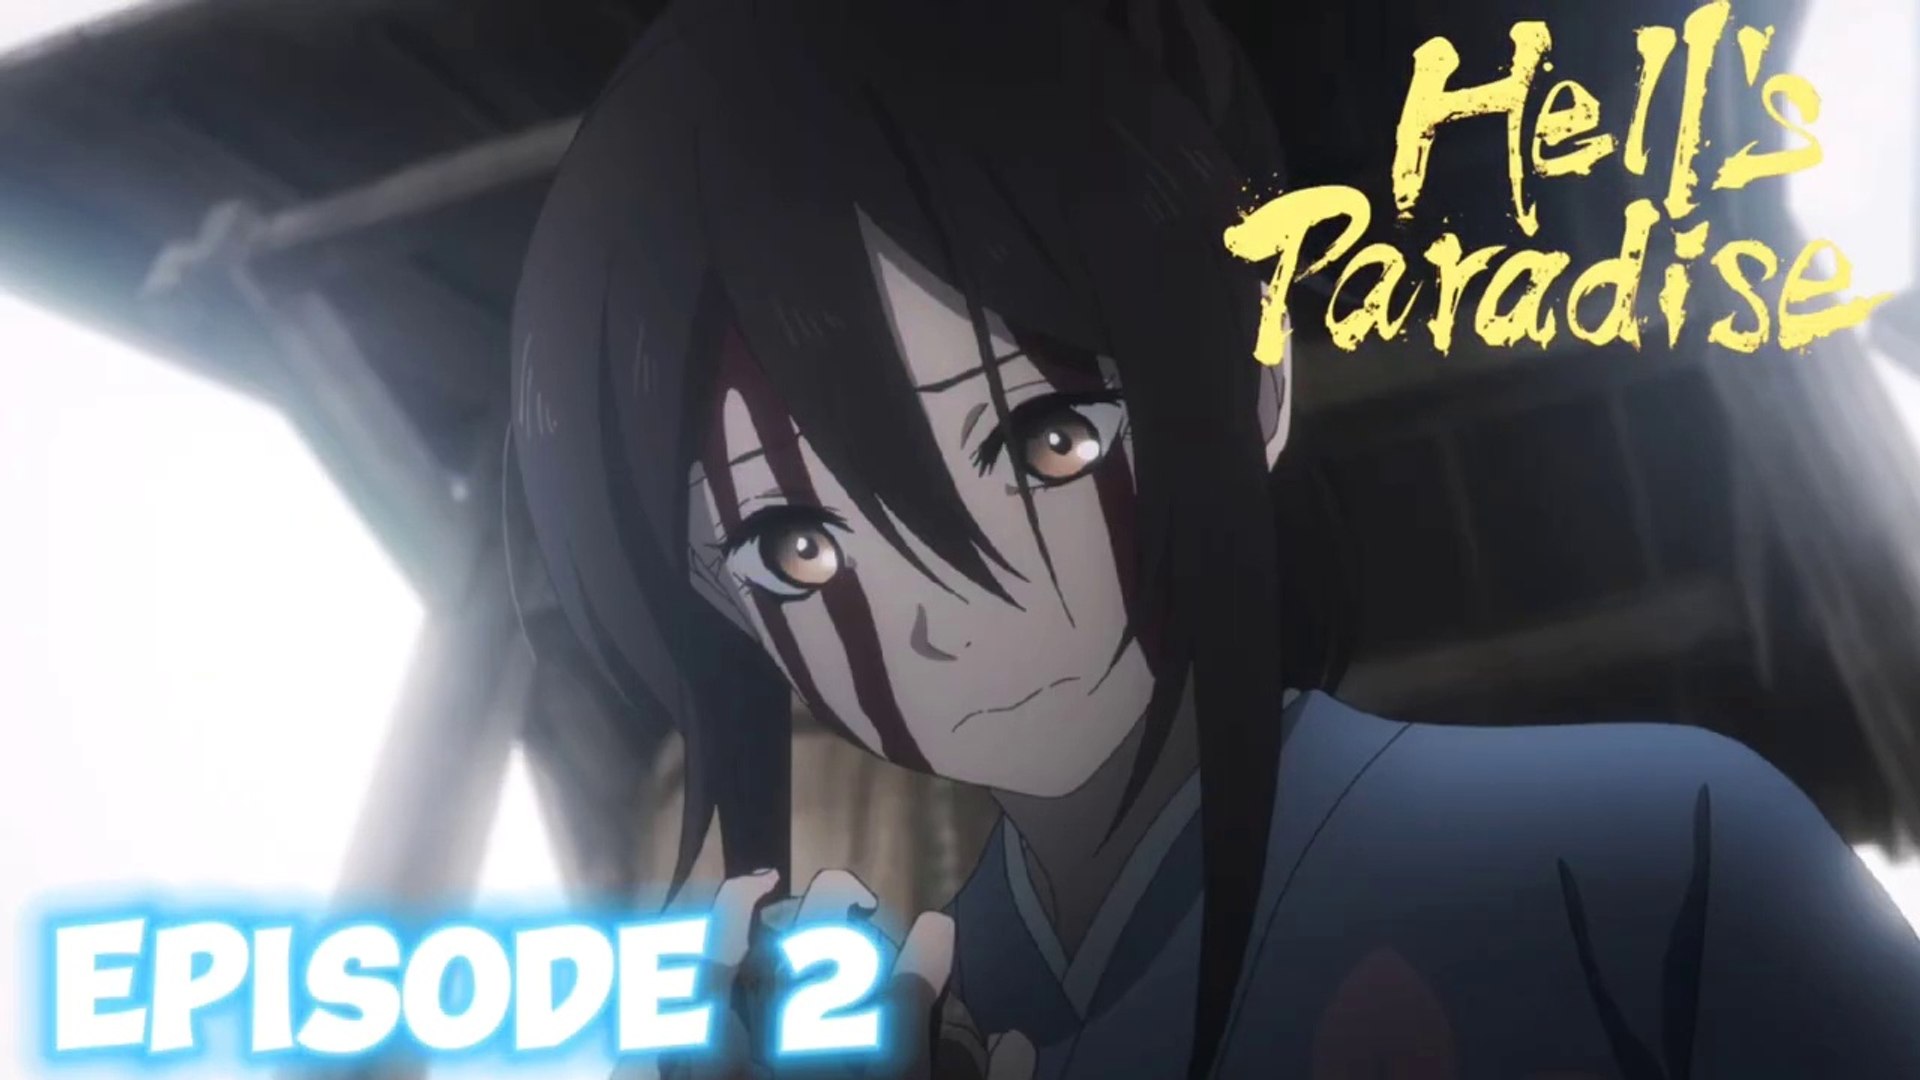 Hells Paradise Season 1 Episode 1 Hindi Dubbed, Jigokuraku Season 1